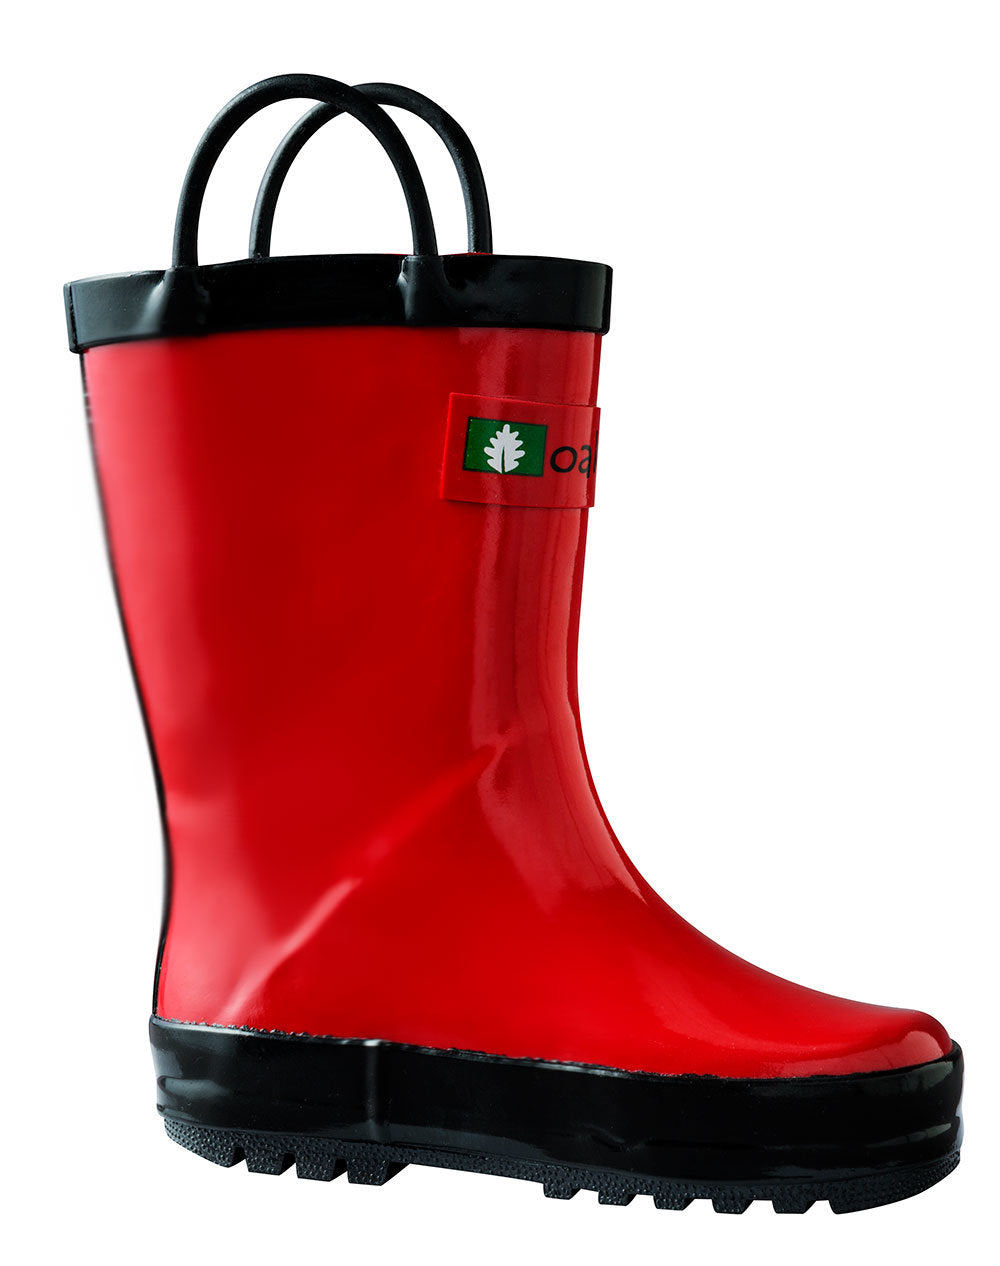 Children's Rubber Rain Boots, Fiery Red OAKI